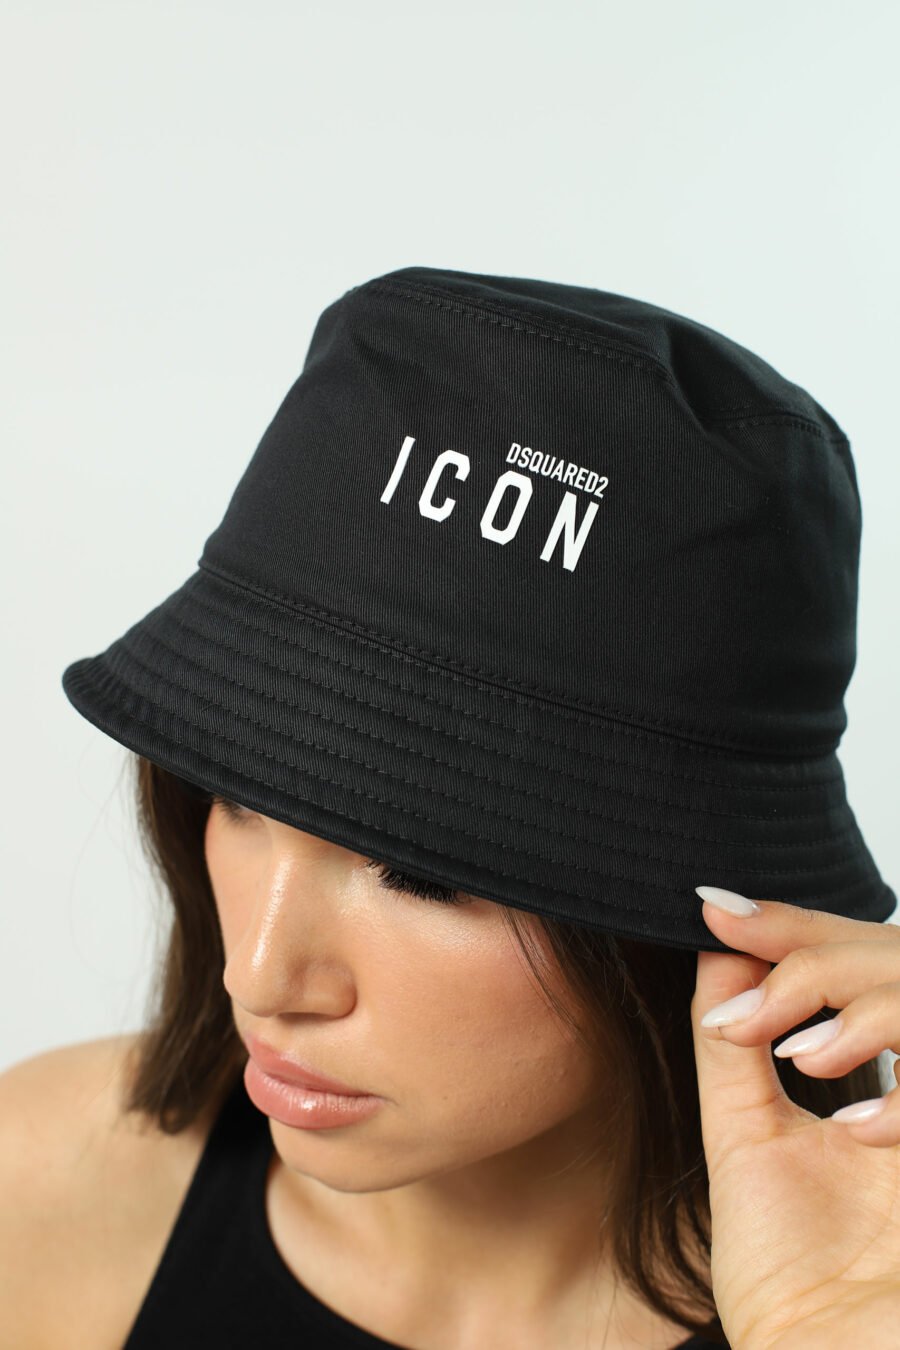 Sombrero de pescador negro con logo "icon" - Photos 2533